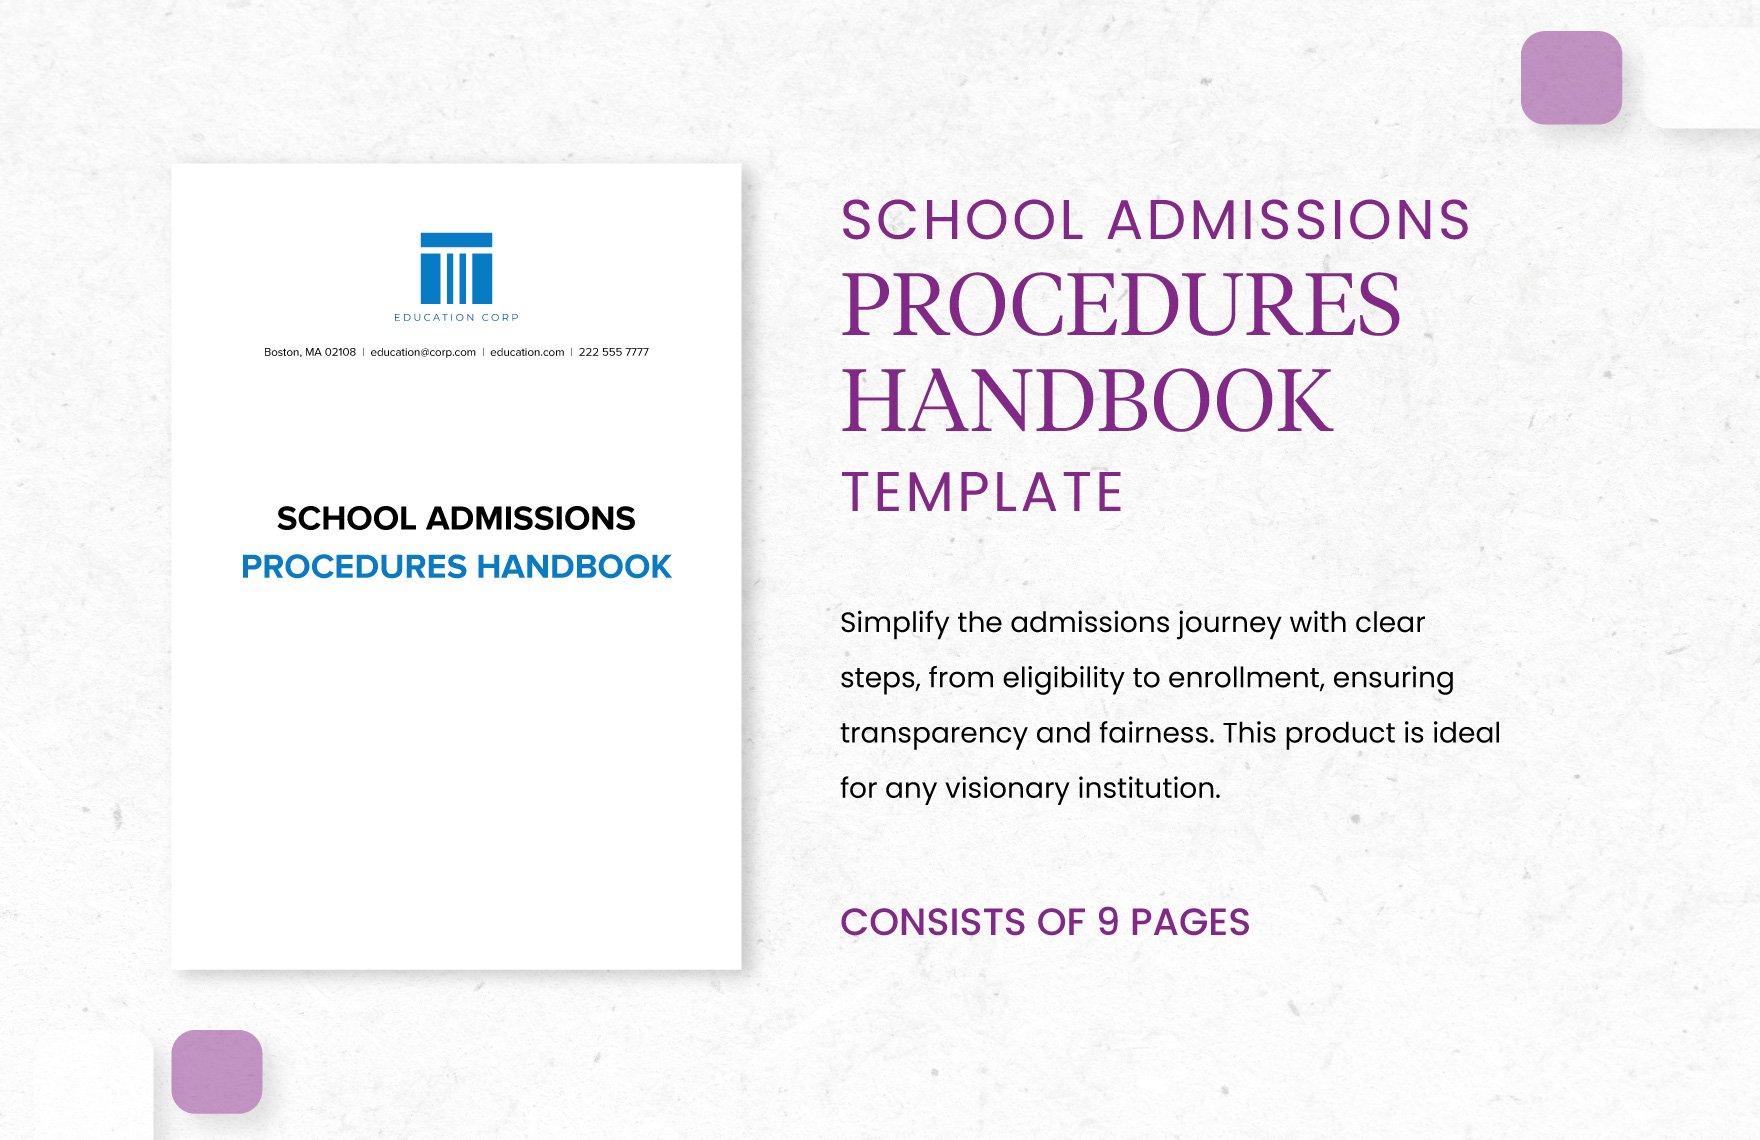 School Admissions Procedures Handbook Template